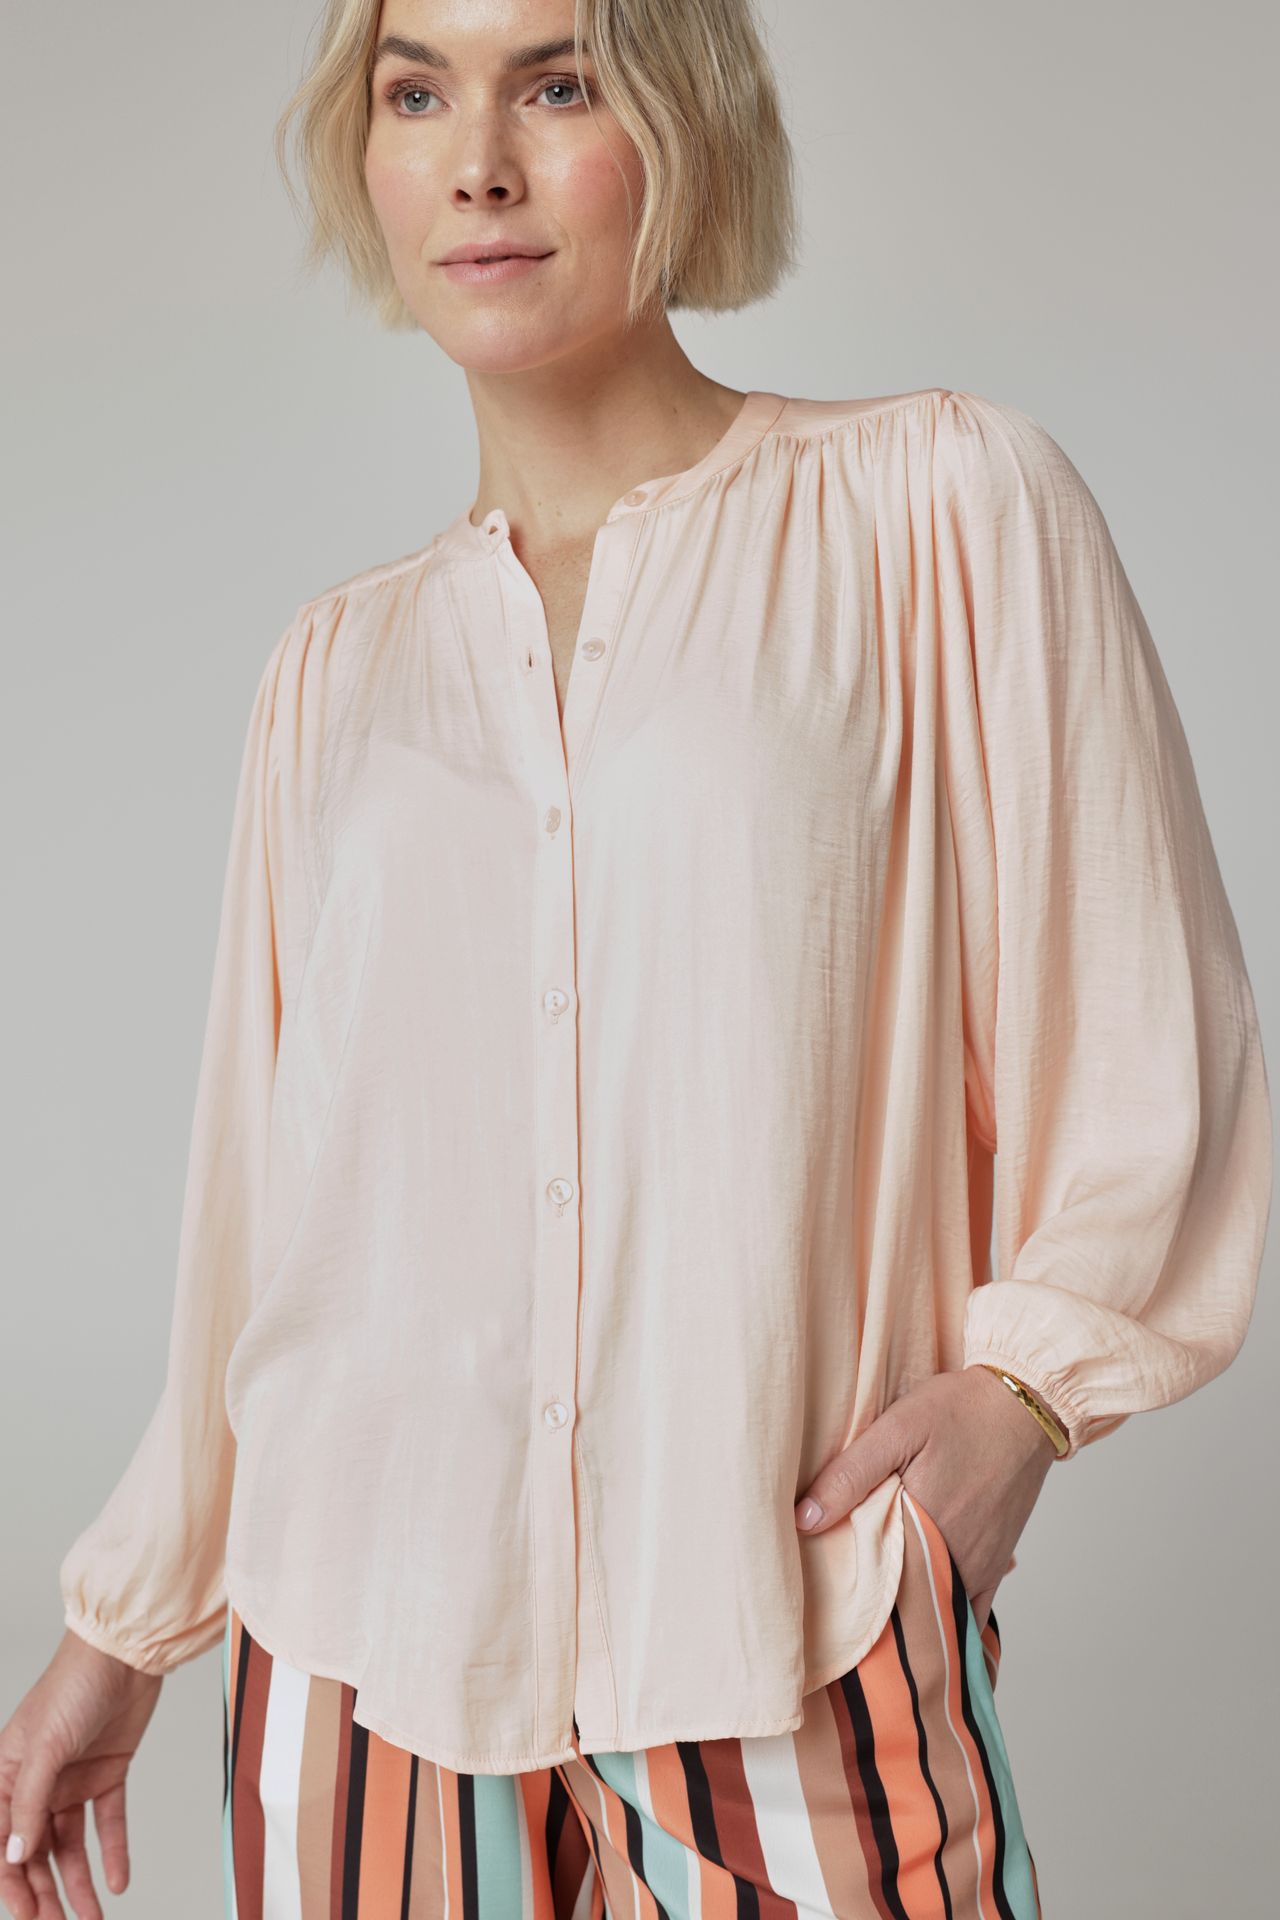 Norah Lichtroze blouse rose 214350-907